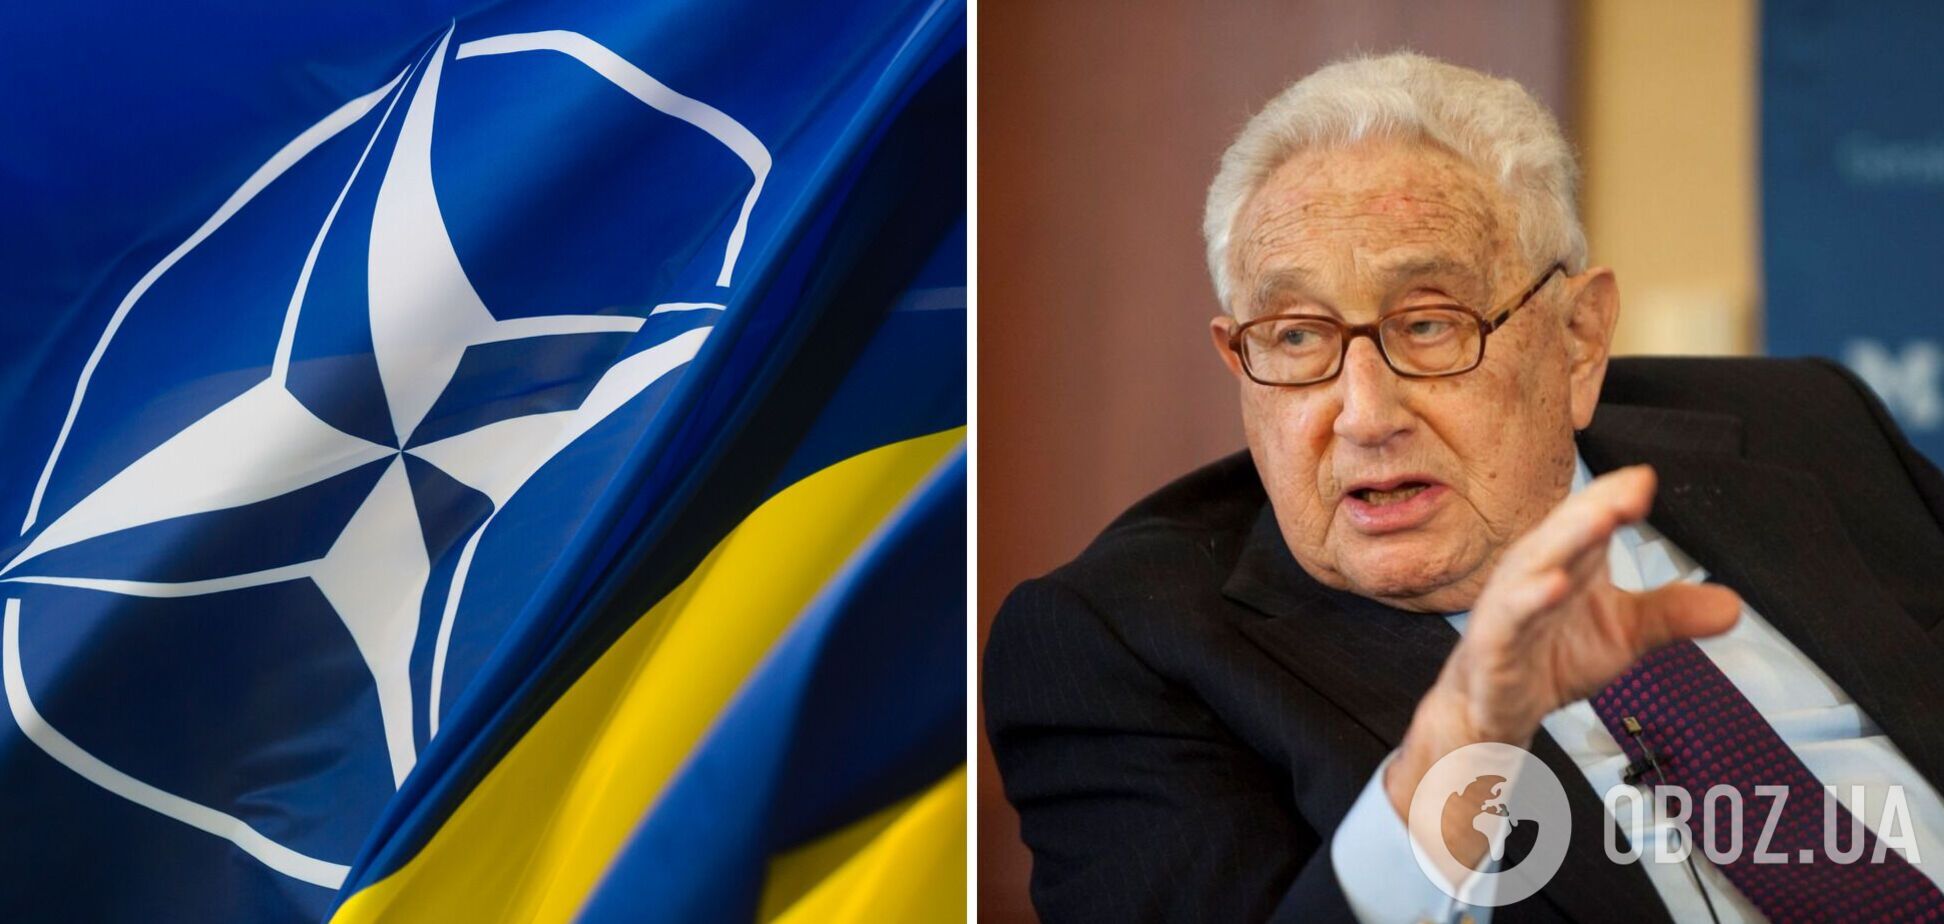 Кіссінджер змінив свою позицію щодо членства України в НАТО: ідея про нейтральність більше не має сенсу 